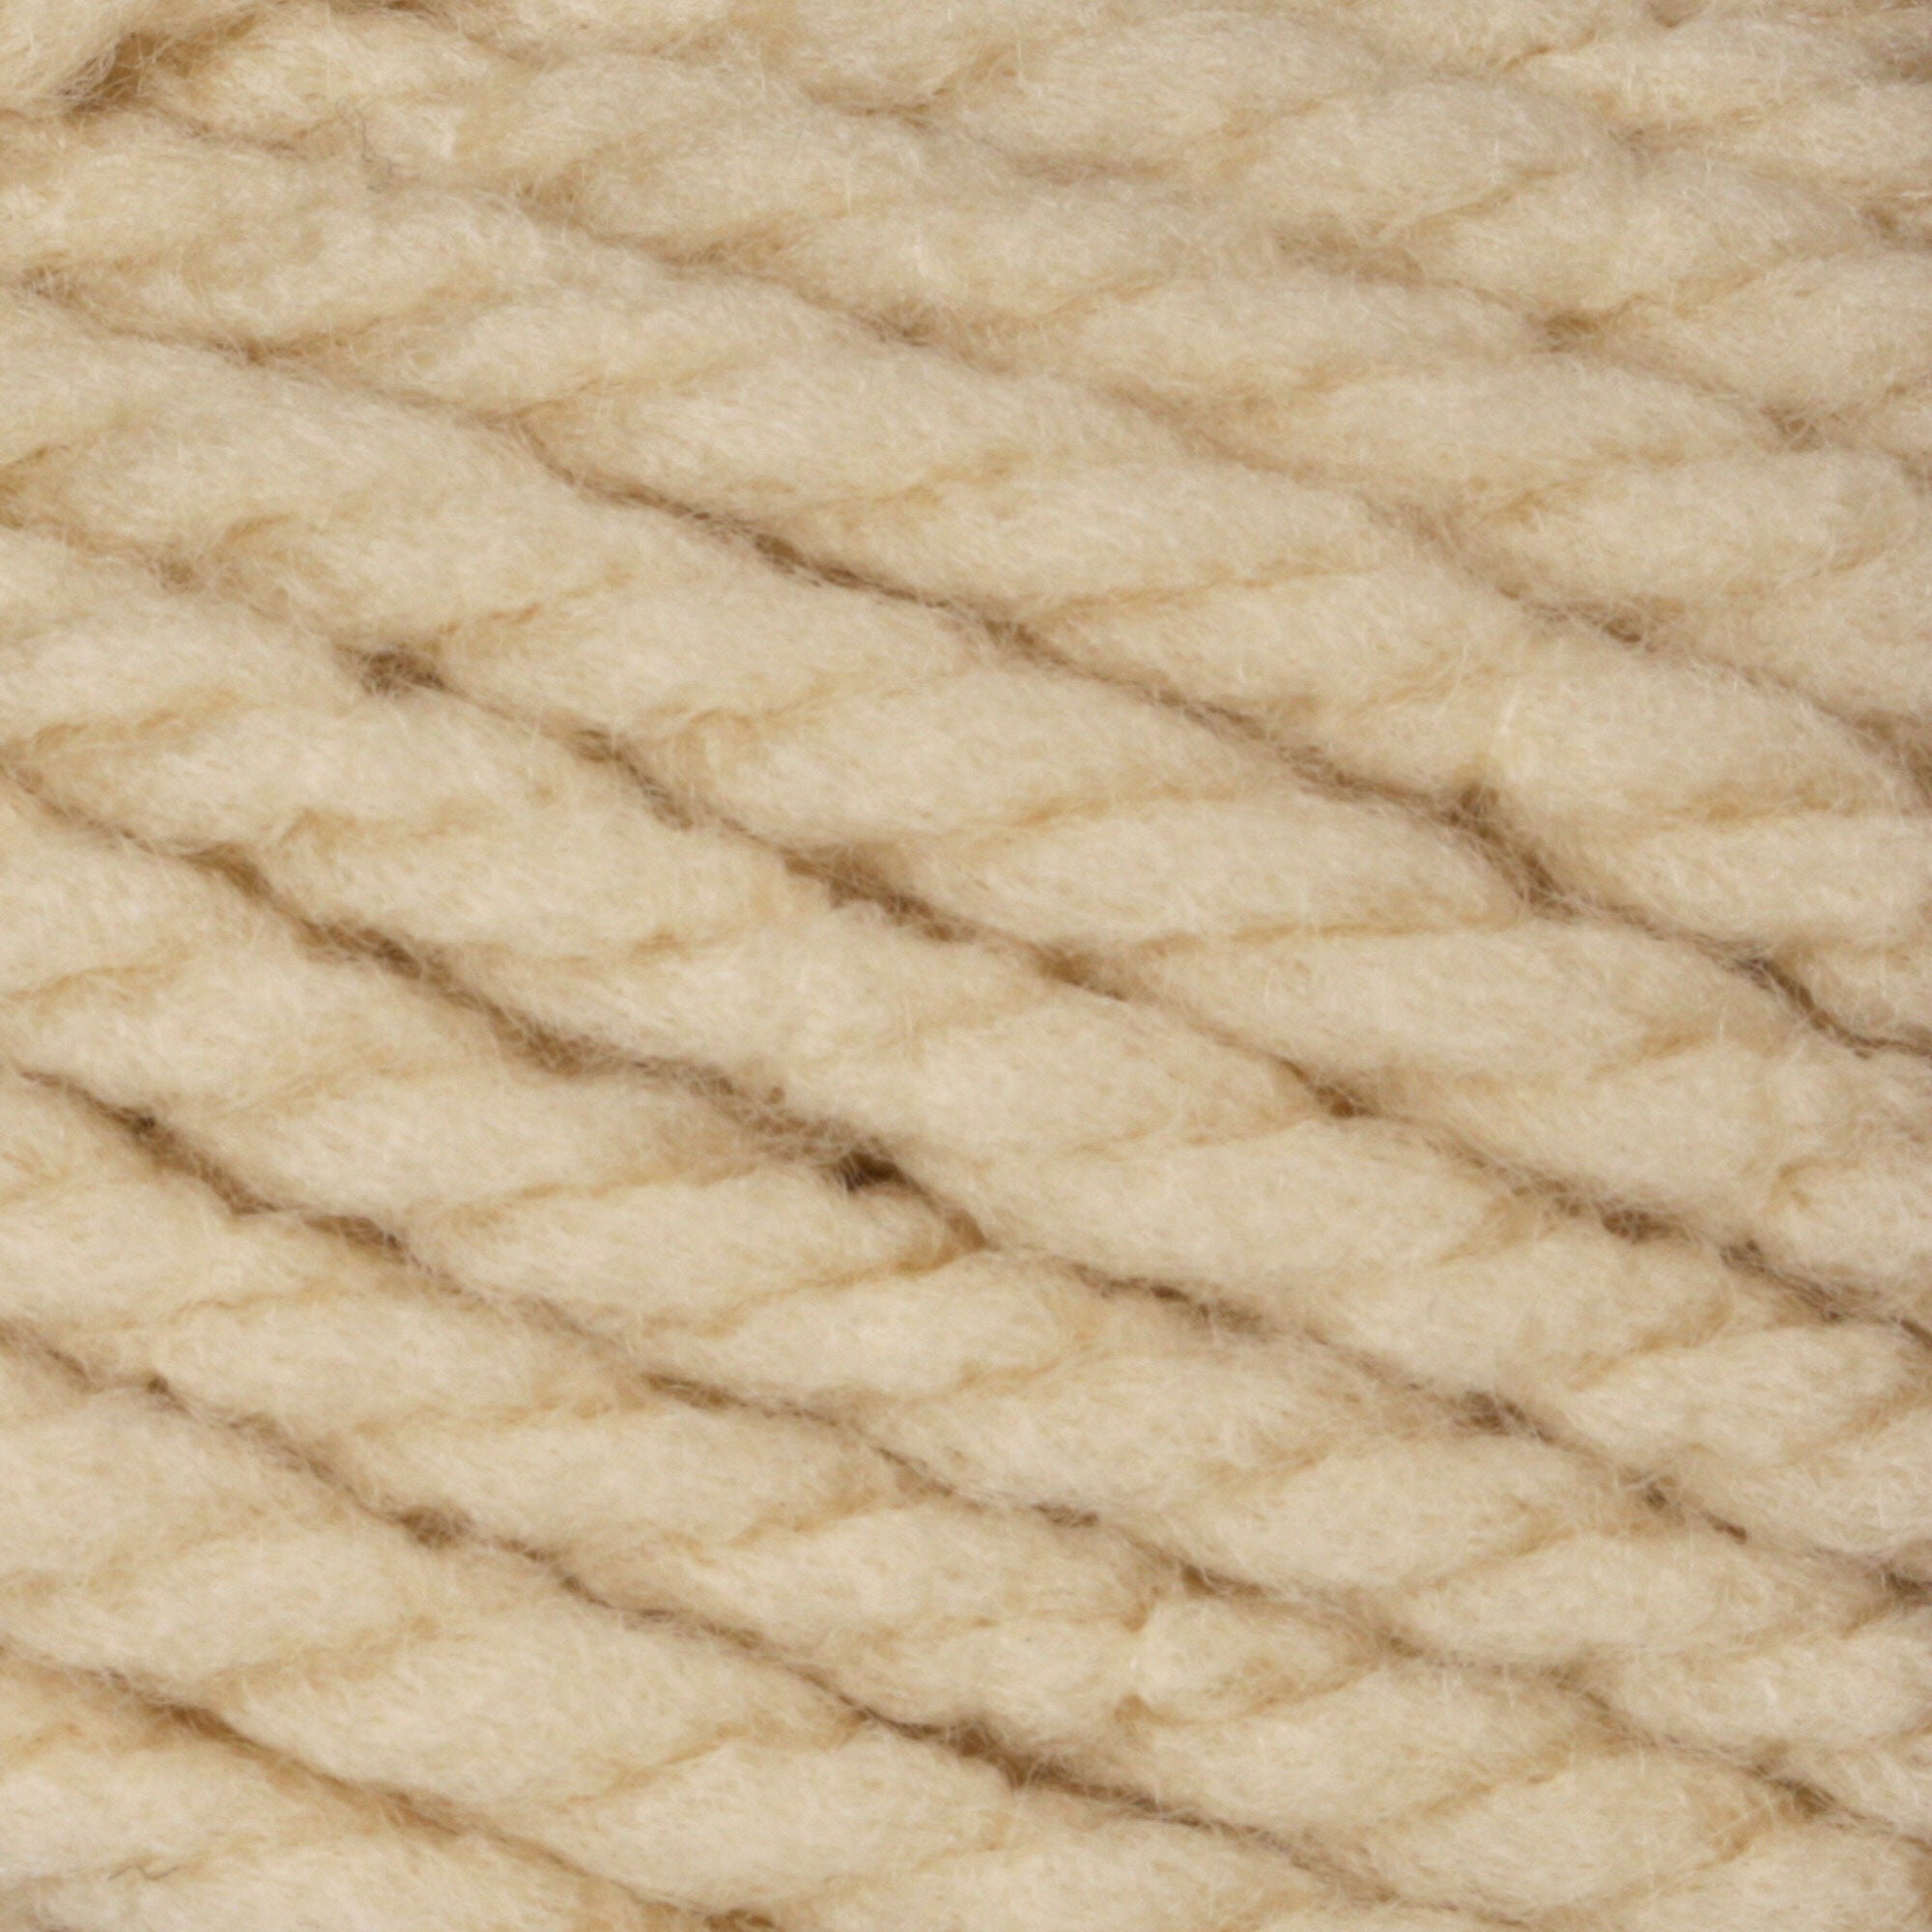 Acrylic yarn, beige, 100g. Colour: beige